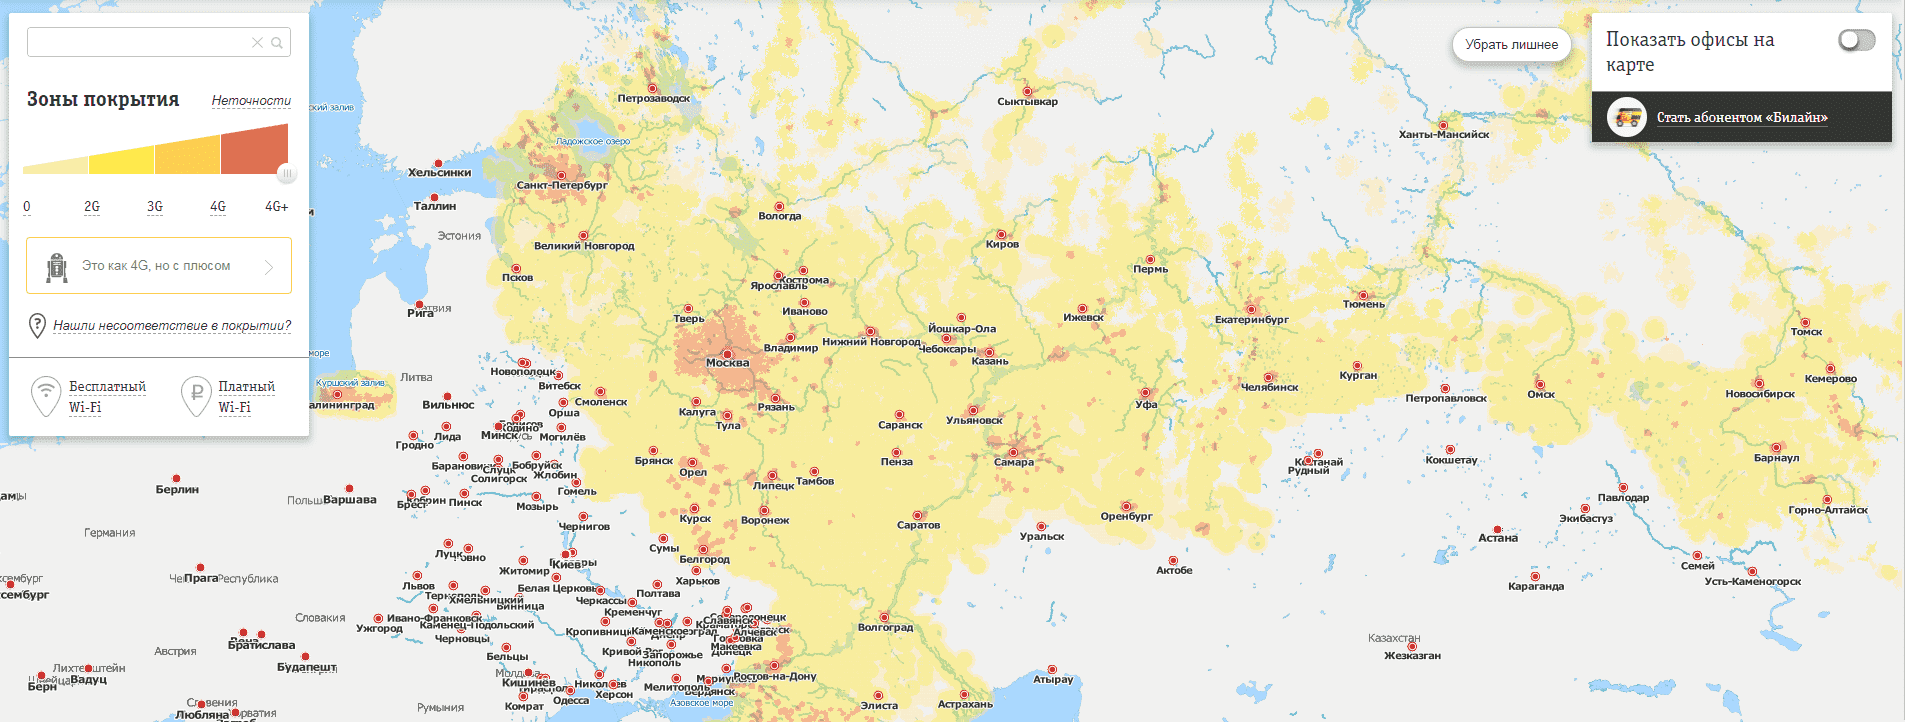 Карта зоны покрытия 3g и 4g мегафон по россии 2021 года с указанием городов | карта сети megafon